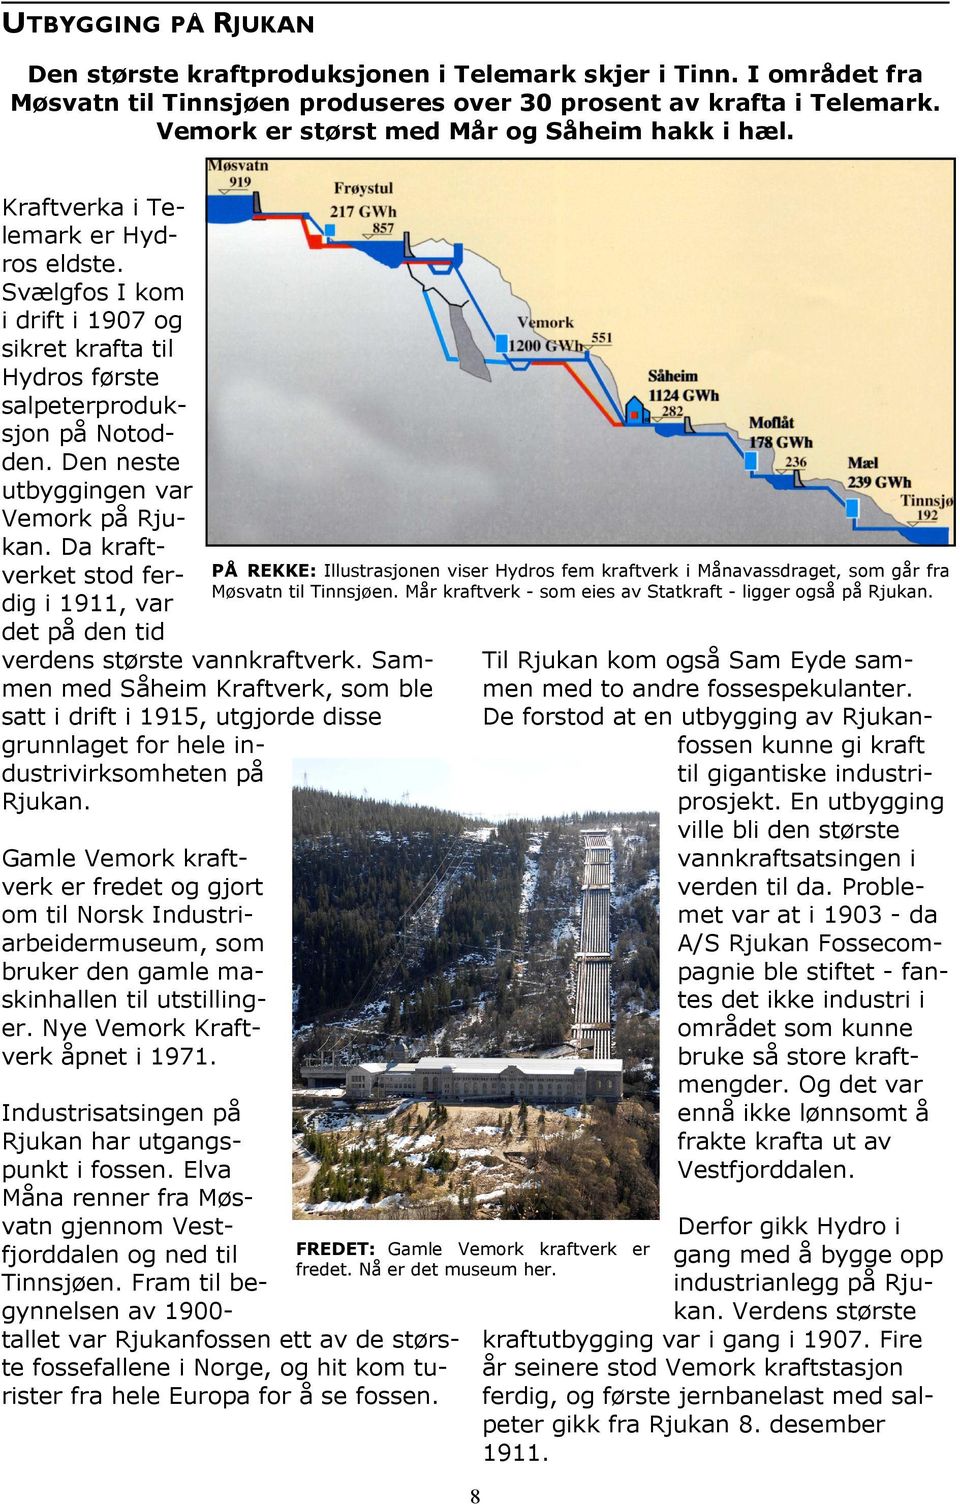 Den neste utbyggingen var Vemork på Rjukan. Da kraftverket stod ferdig i 1911, var det på den tid verdens største vannkraftverk.